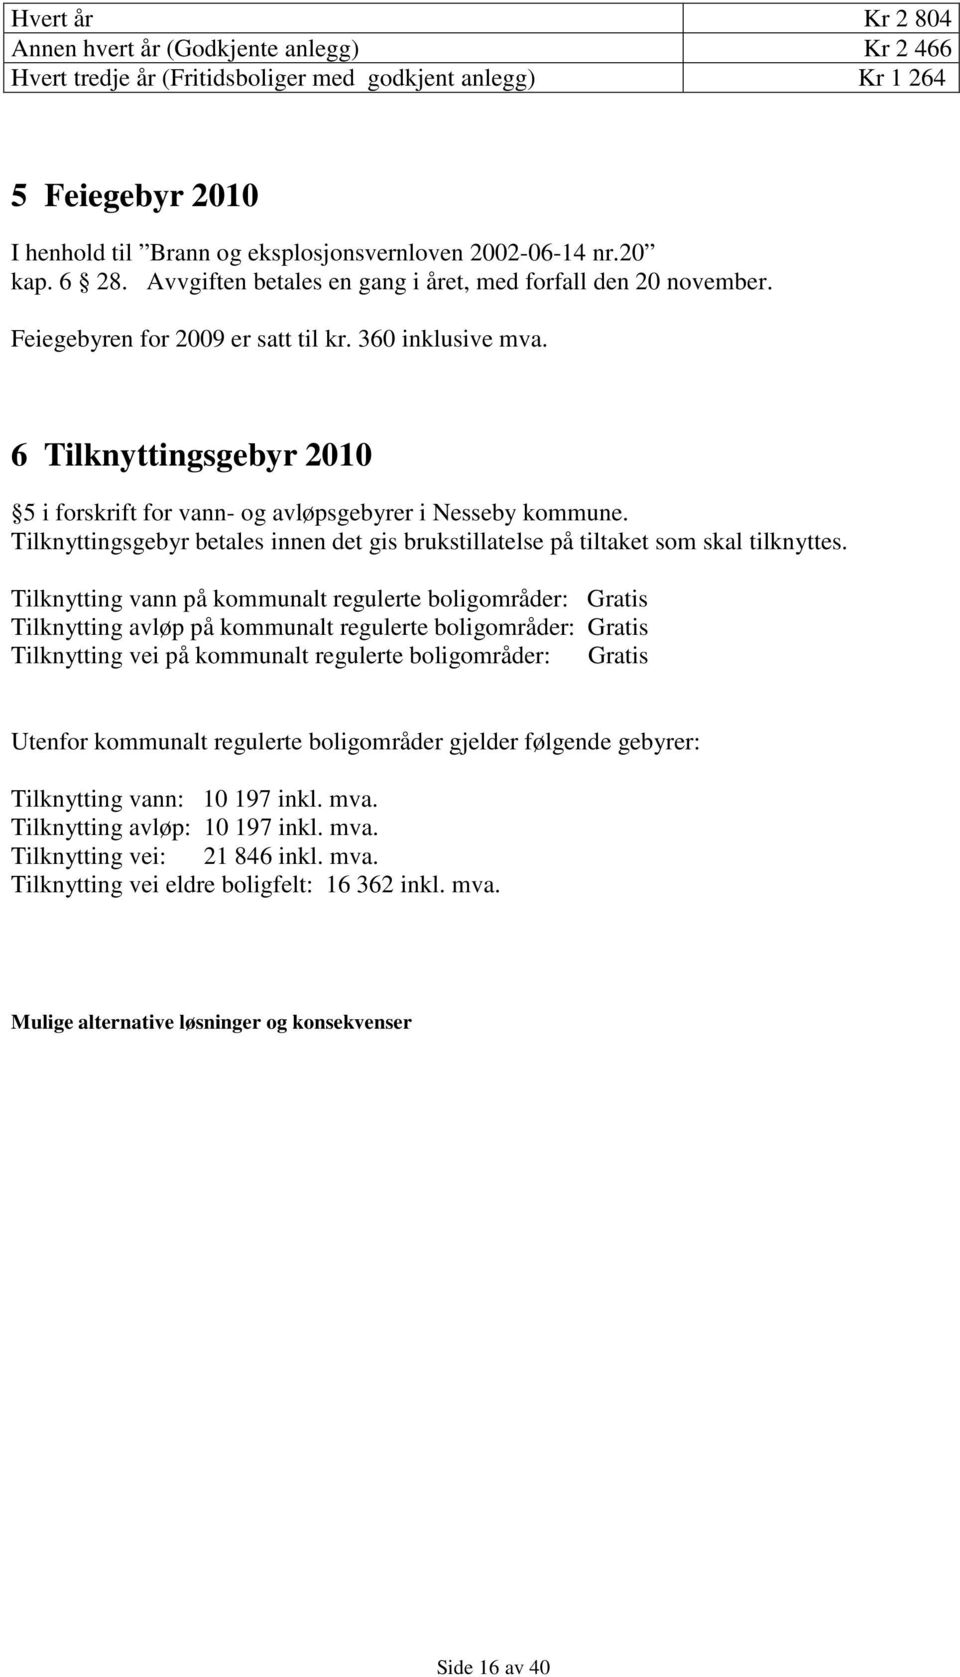 6 Tilknyttingsgebyr 2010 5 i forskrift for vann- og avløpsgebyrer i Nesseby kommune. Tilknyttingsgebyr betales innen det gis brukstillatelse på tiltaket som skal tilknyttes.